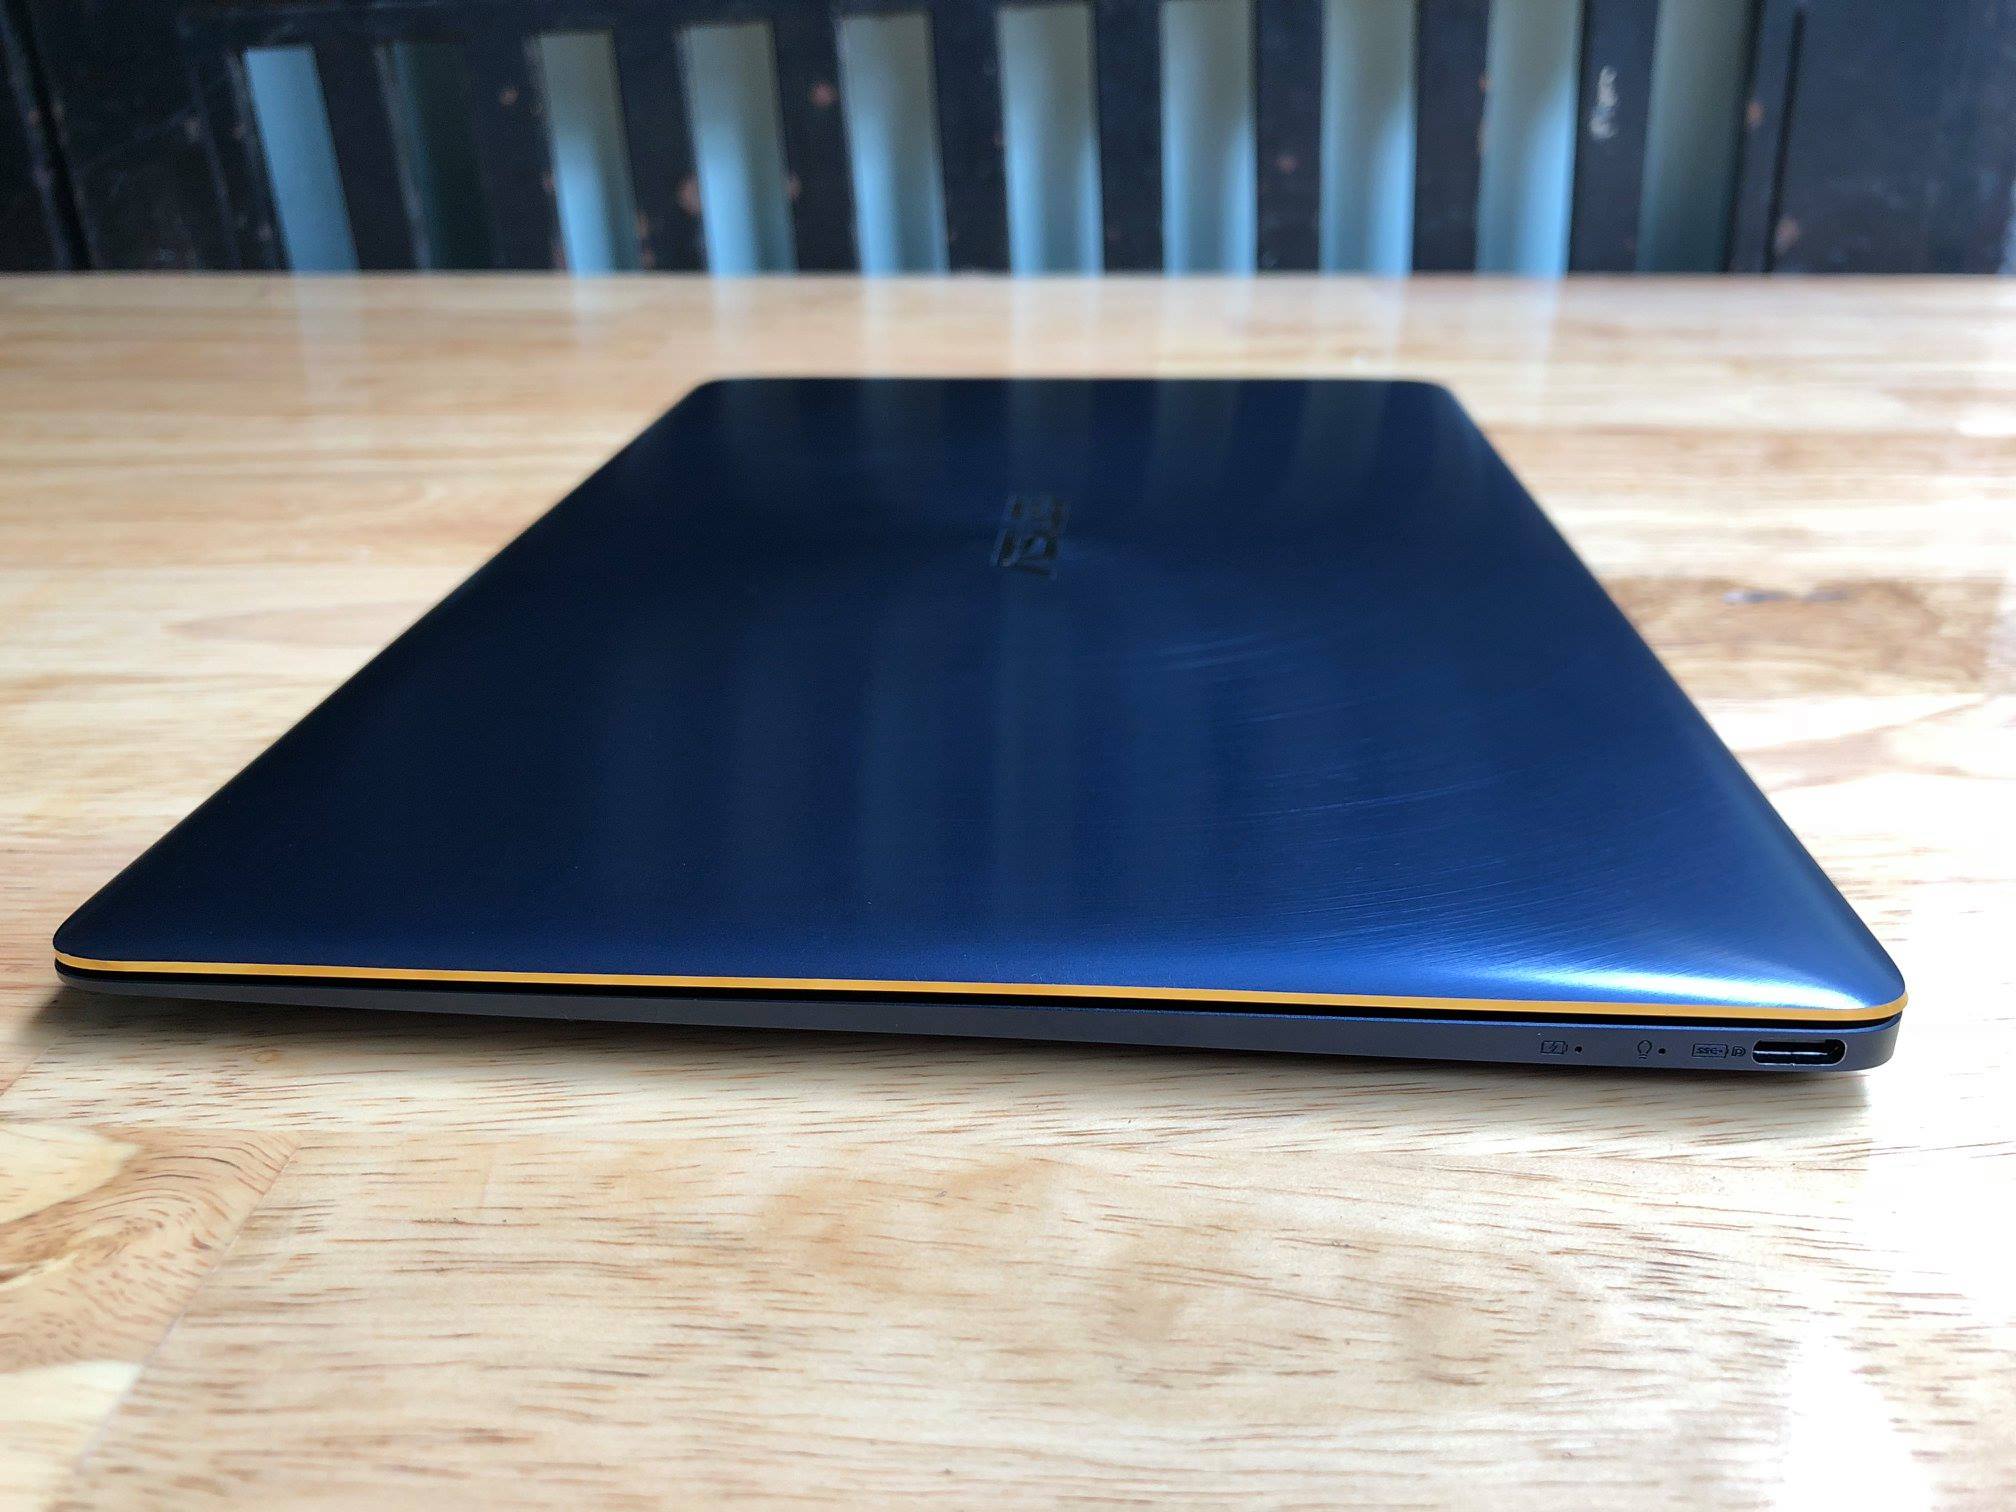 laptop Asus Zenbook 3 UX390, i7 7500u, 16G, 512G, 12.5in, Full HD, siêu mỏng - 4